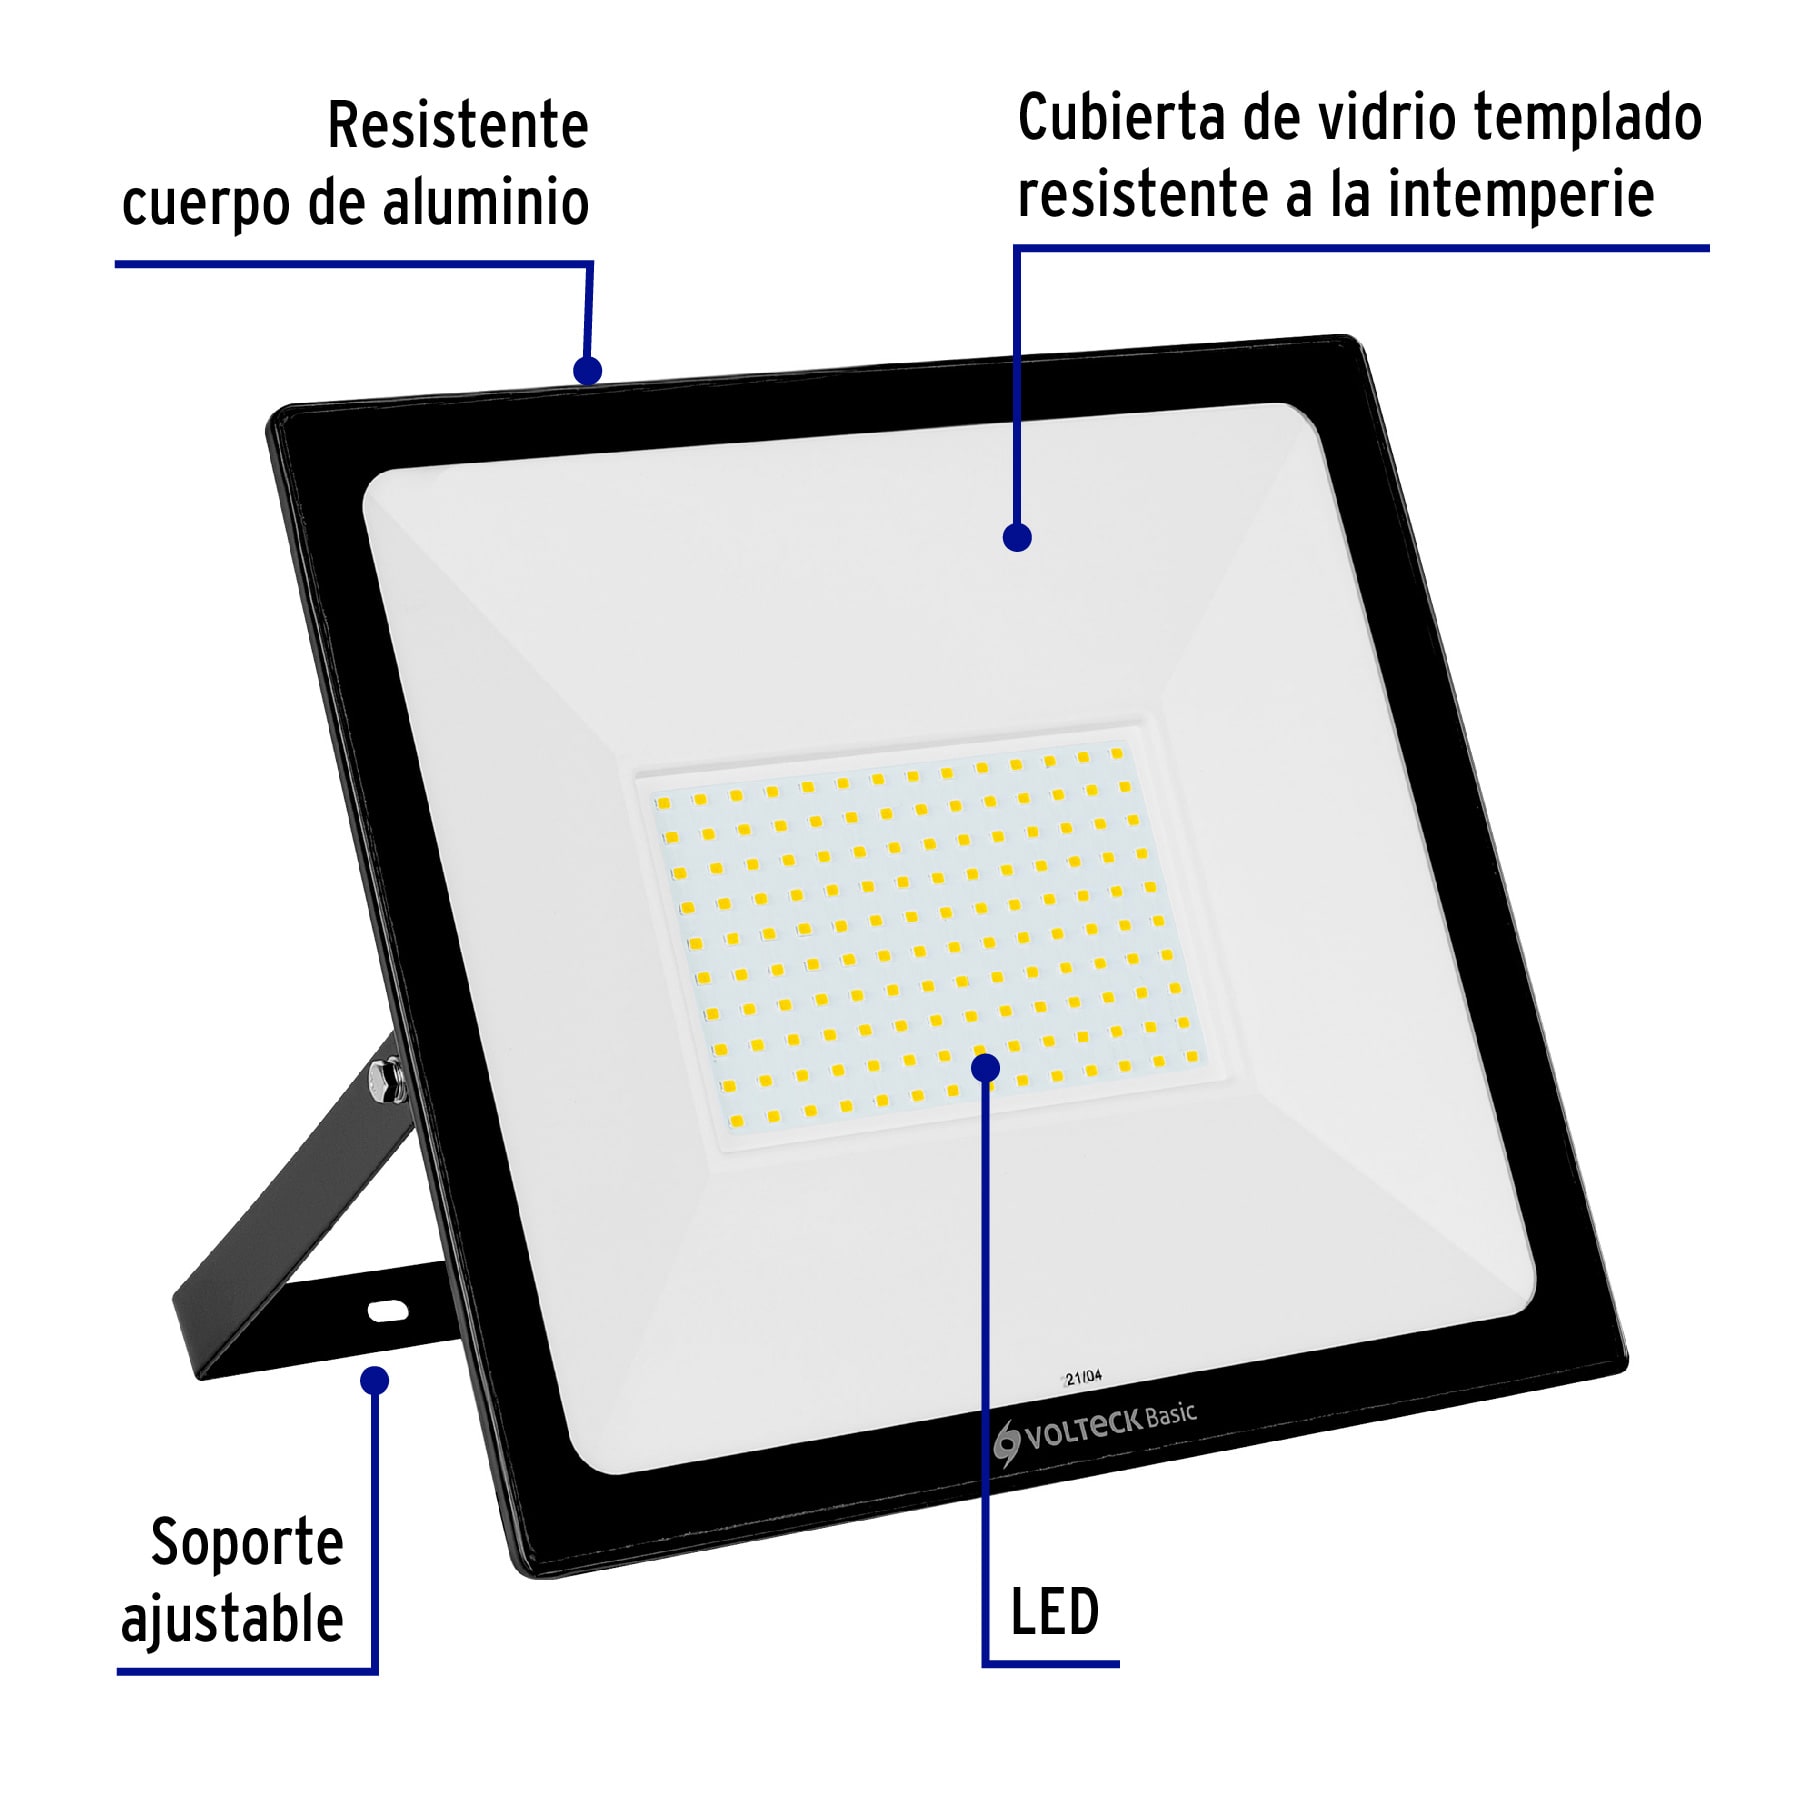 REFLECTORES DE LED ULTRADELGADOS VOLTECK BASIC 28093